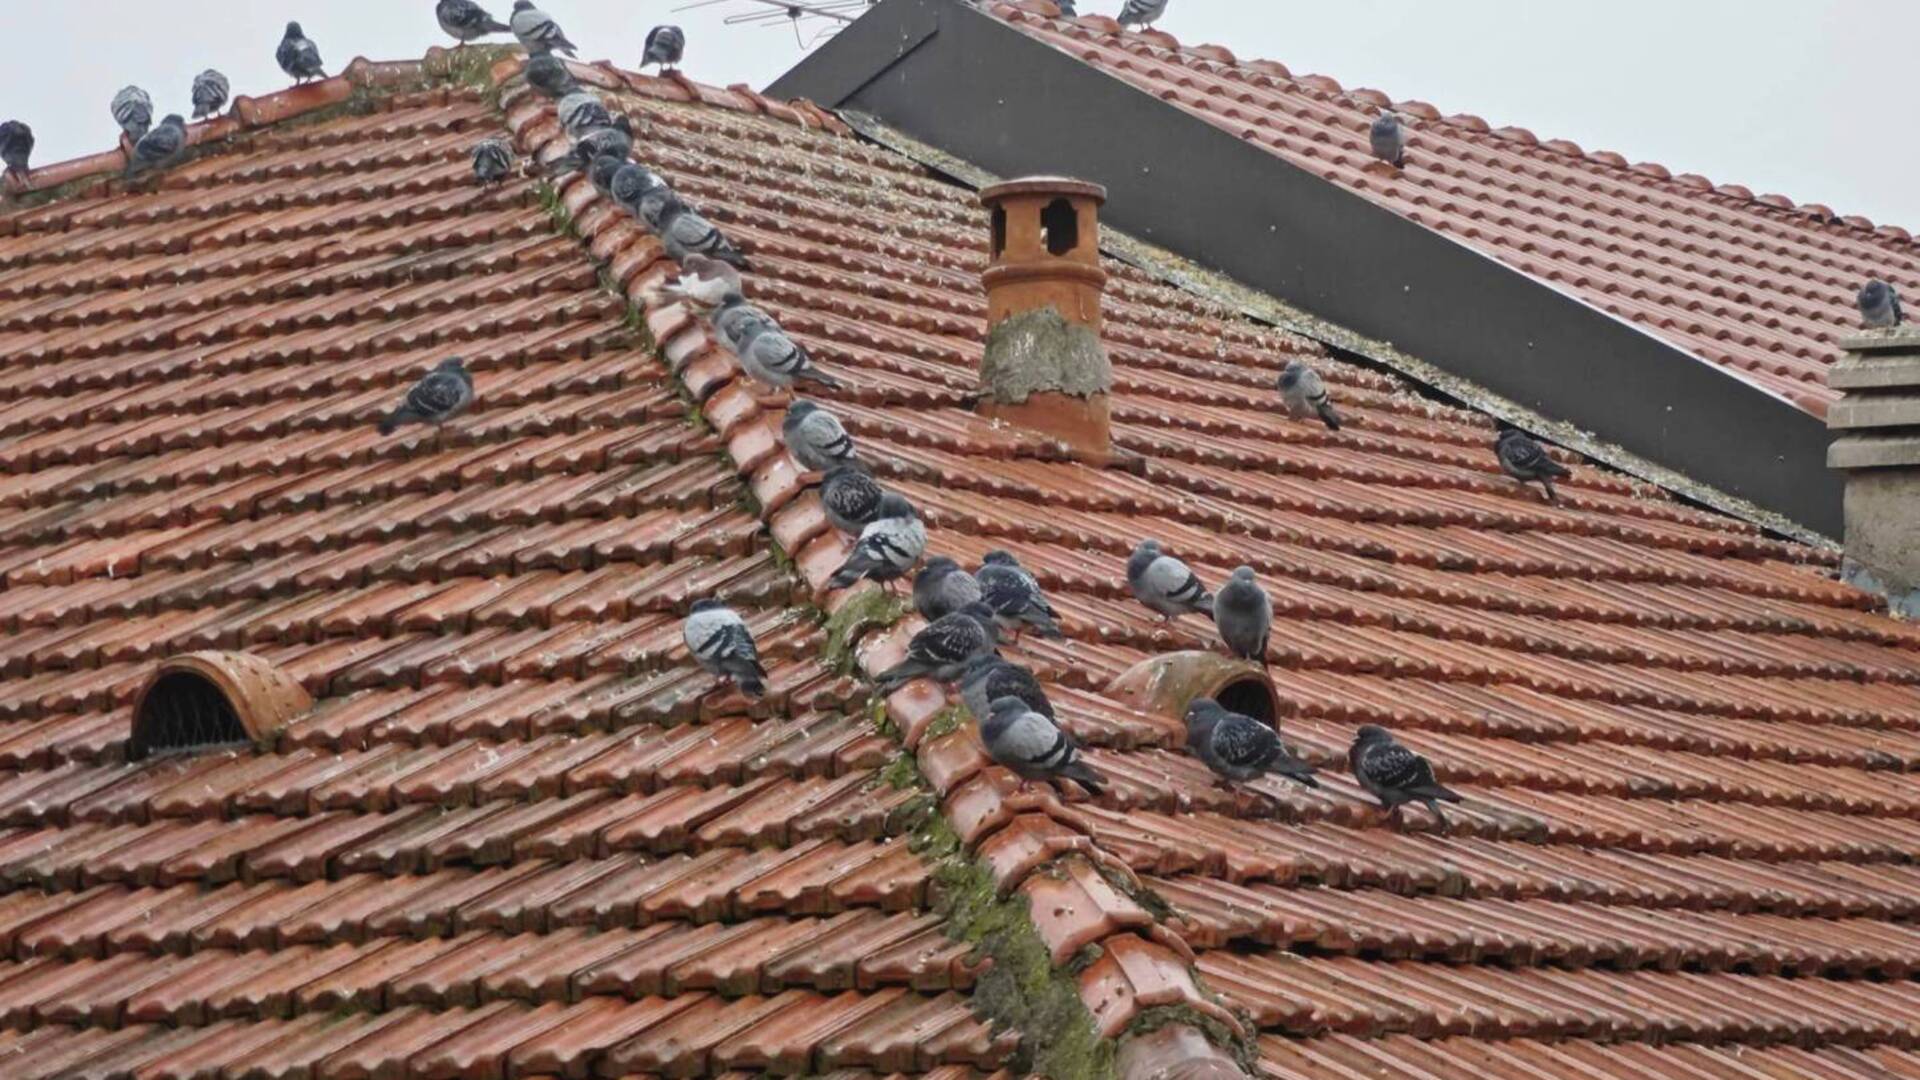 Cesano Maderno: condominio tartassato dai piccioni